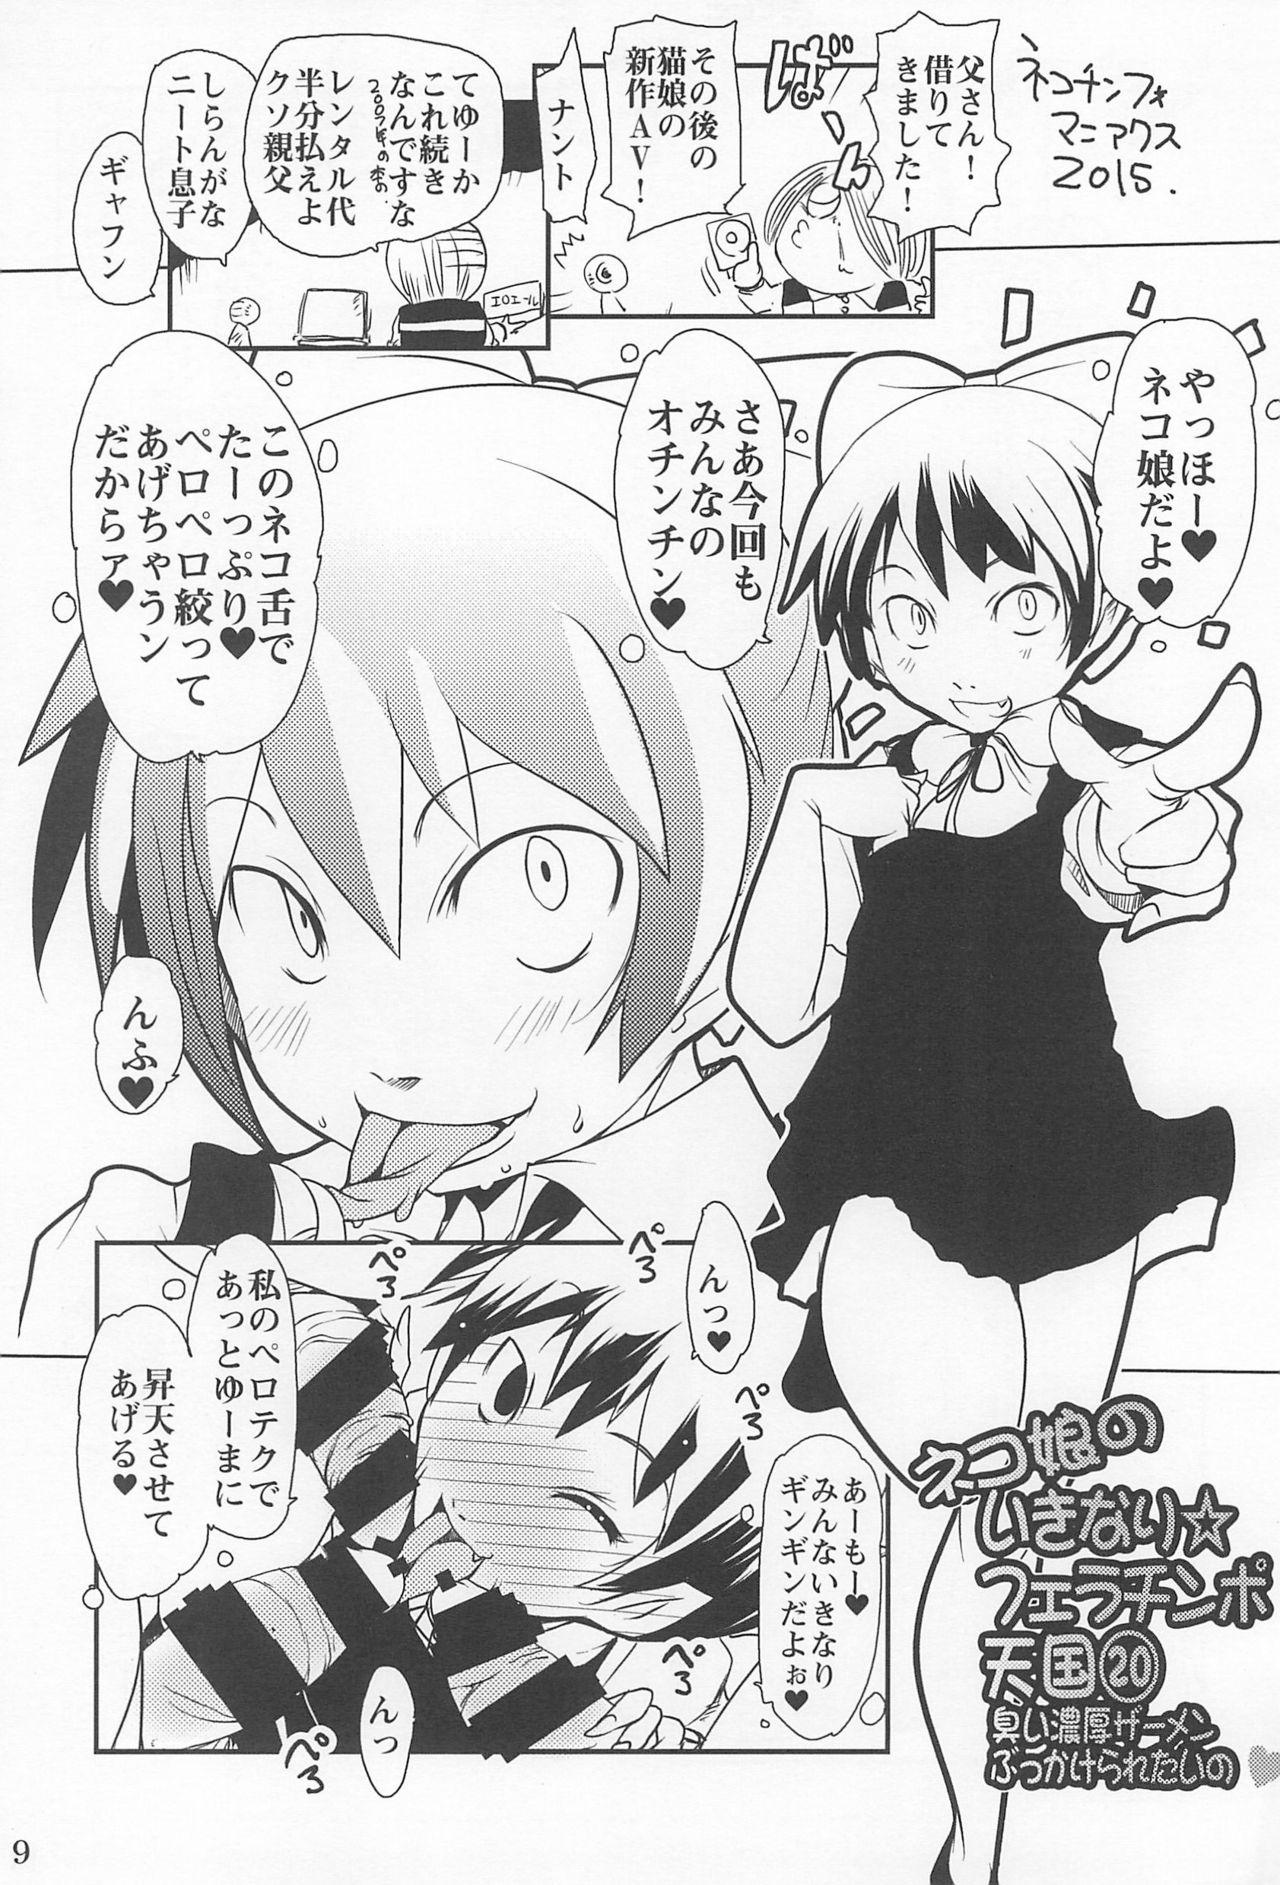 Naughty Suitekiya 10 Shuunen Kinen no Hon - Mitsudomoe Gegege no kitarou Ichigo mashimaro 10 carat torte Kodomo no jikan | a childs time Transgender - Page 9